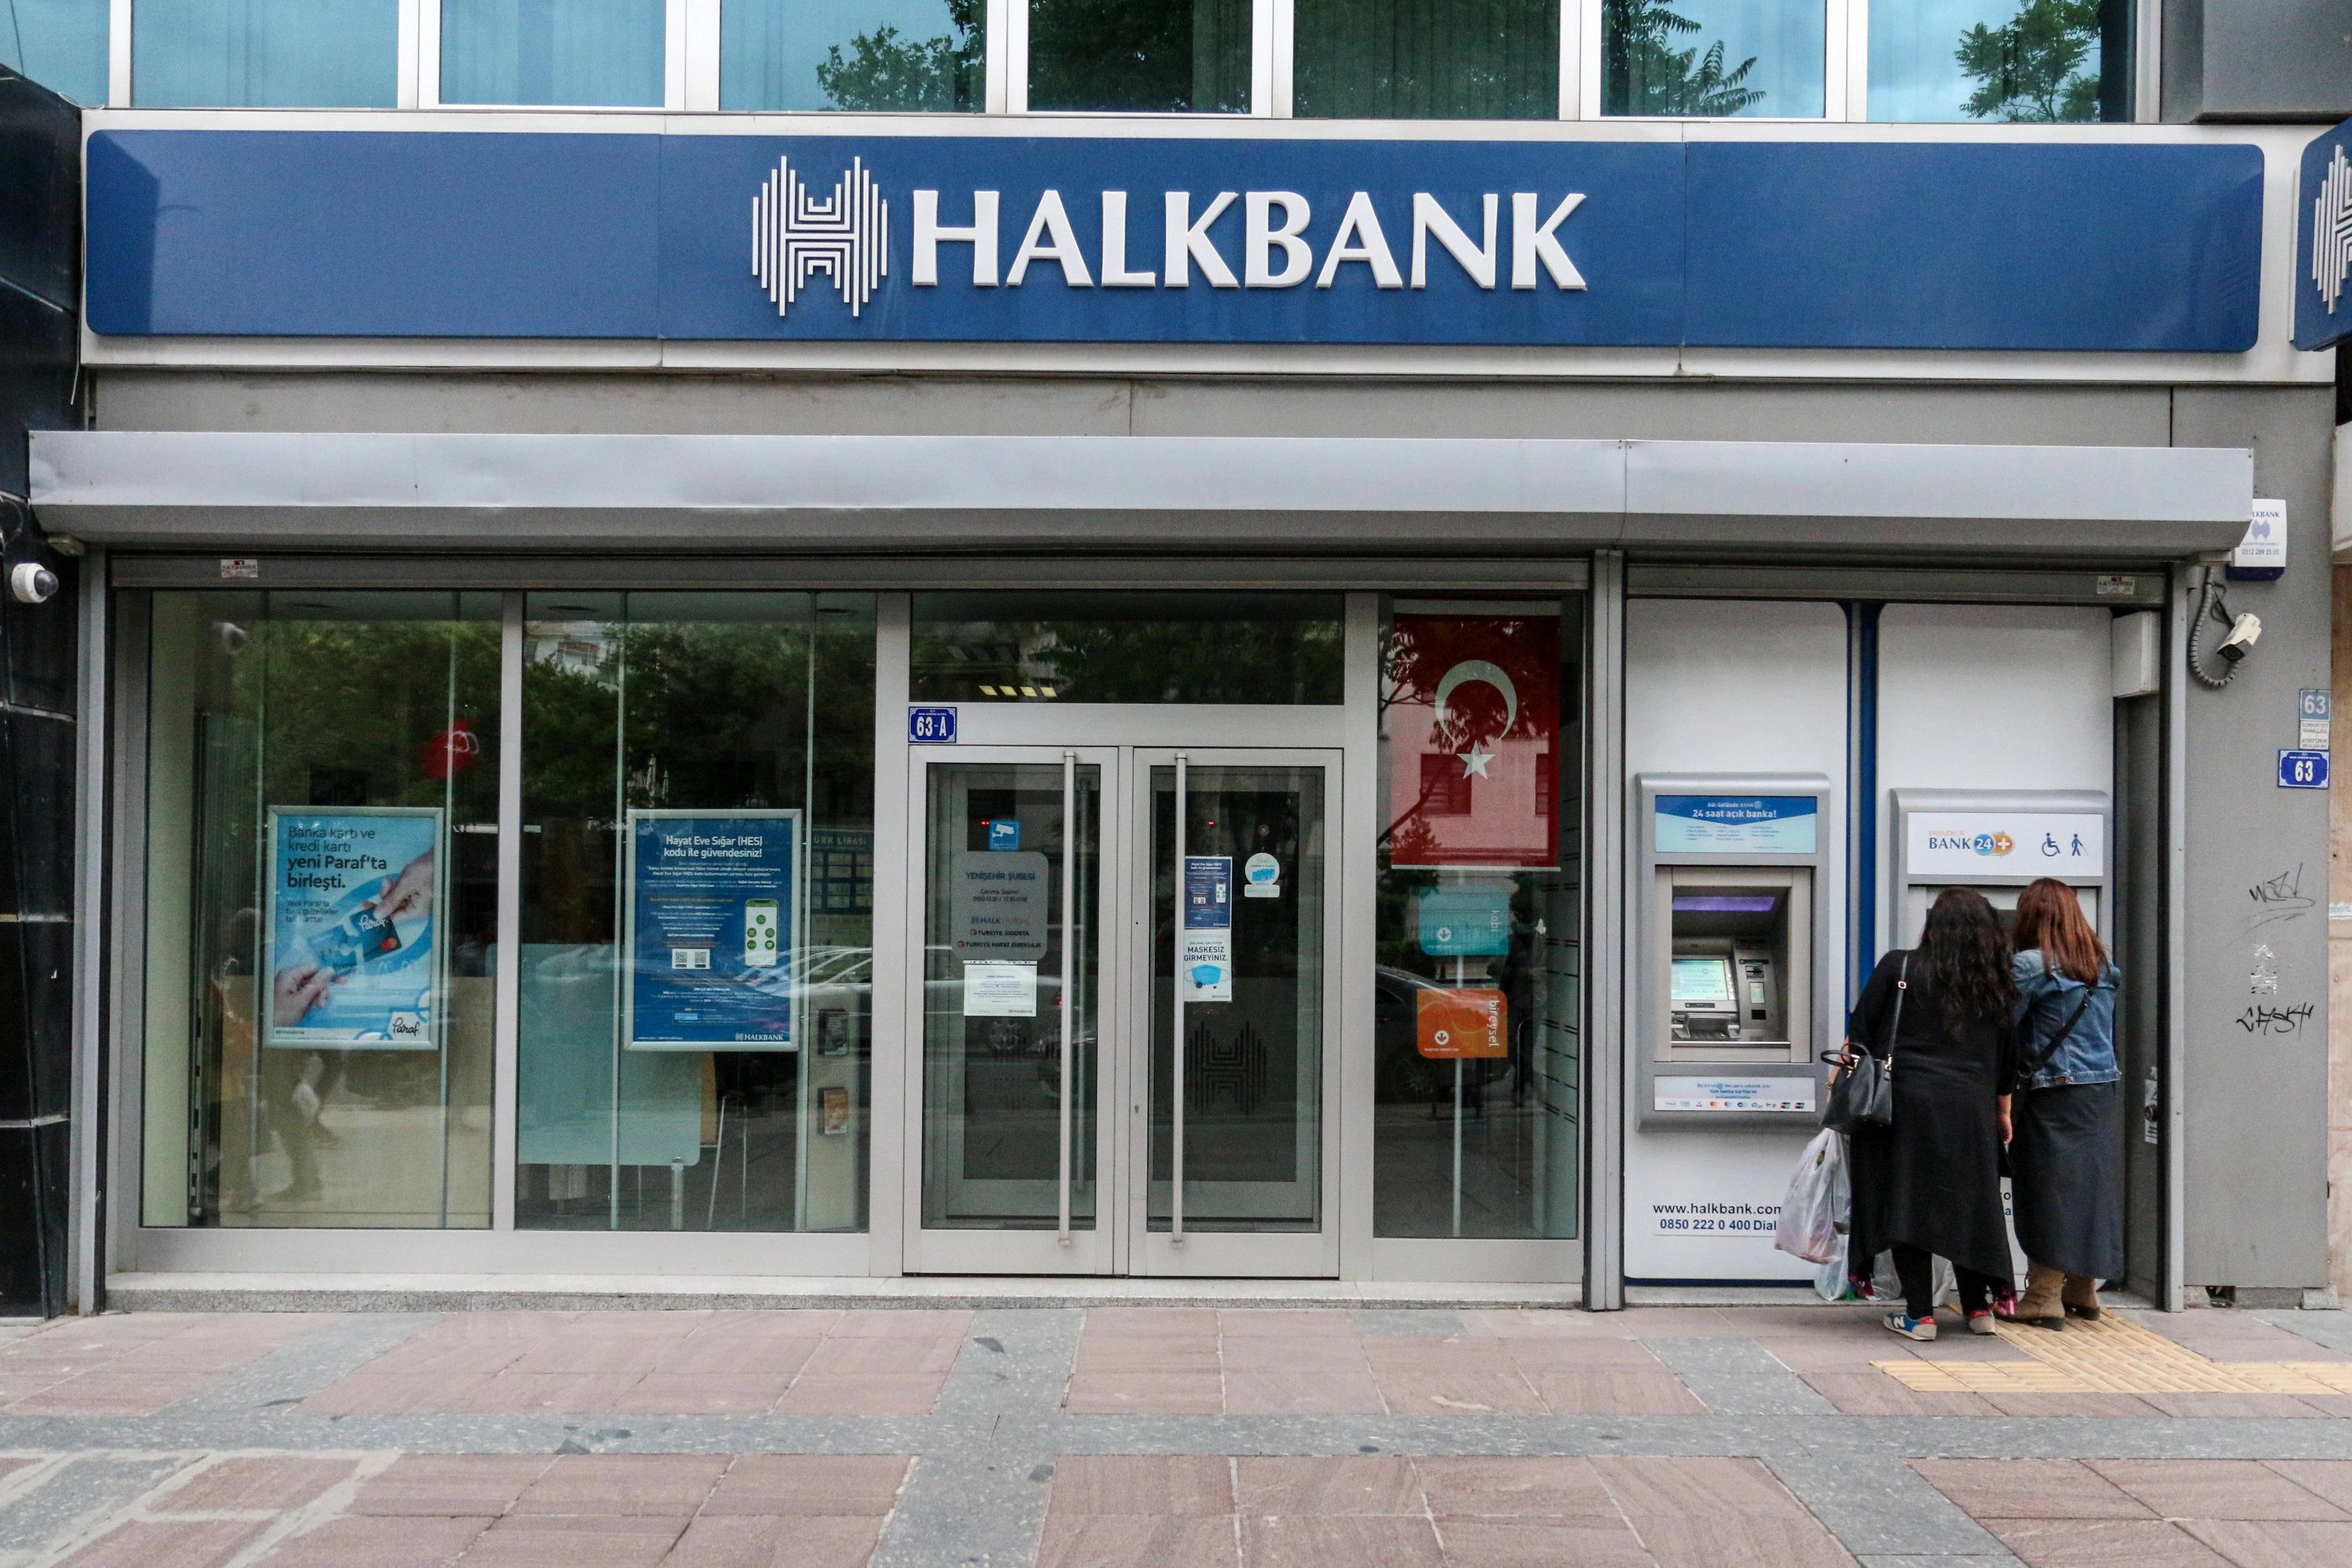 هالك بنك تأسس عام 1938 وهو مصرف مملوك للدولة